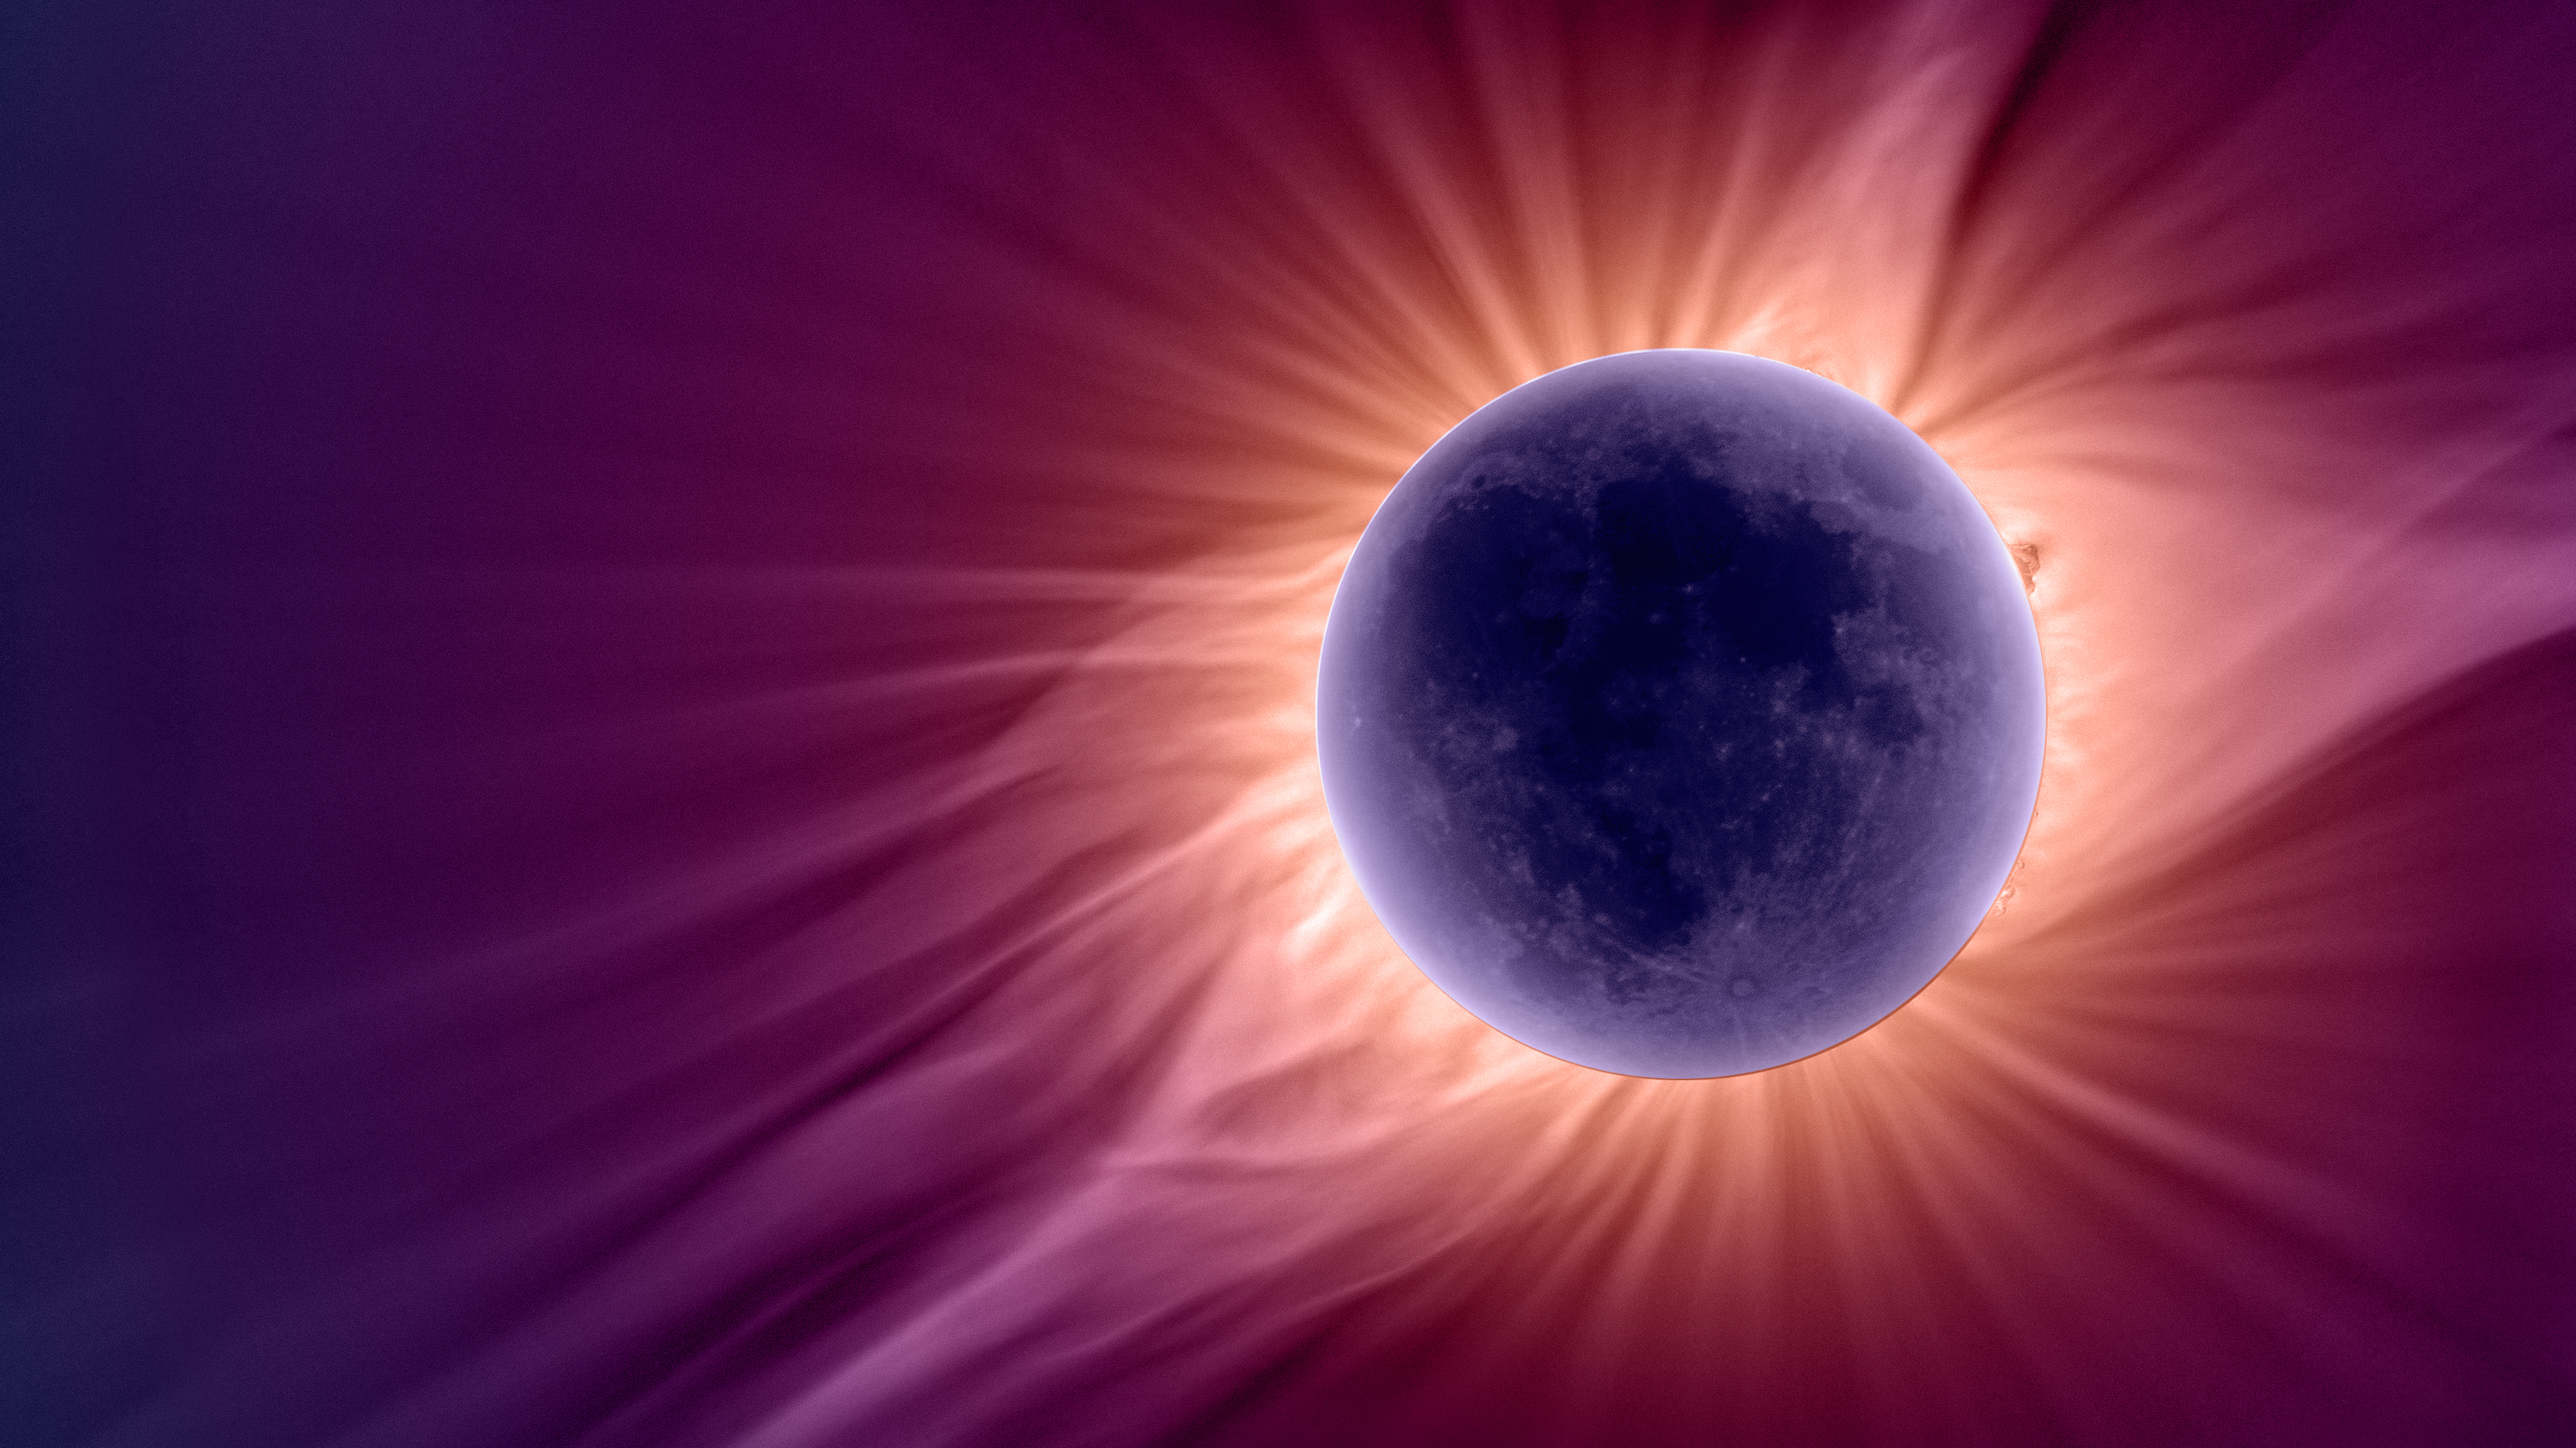 一轮紫色的月亮，明亮的白色，薄薄的太阳大气层围绕着它滚滚而出。它填满了红色和紫色的背景。